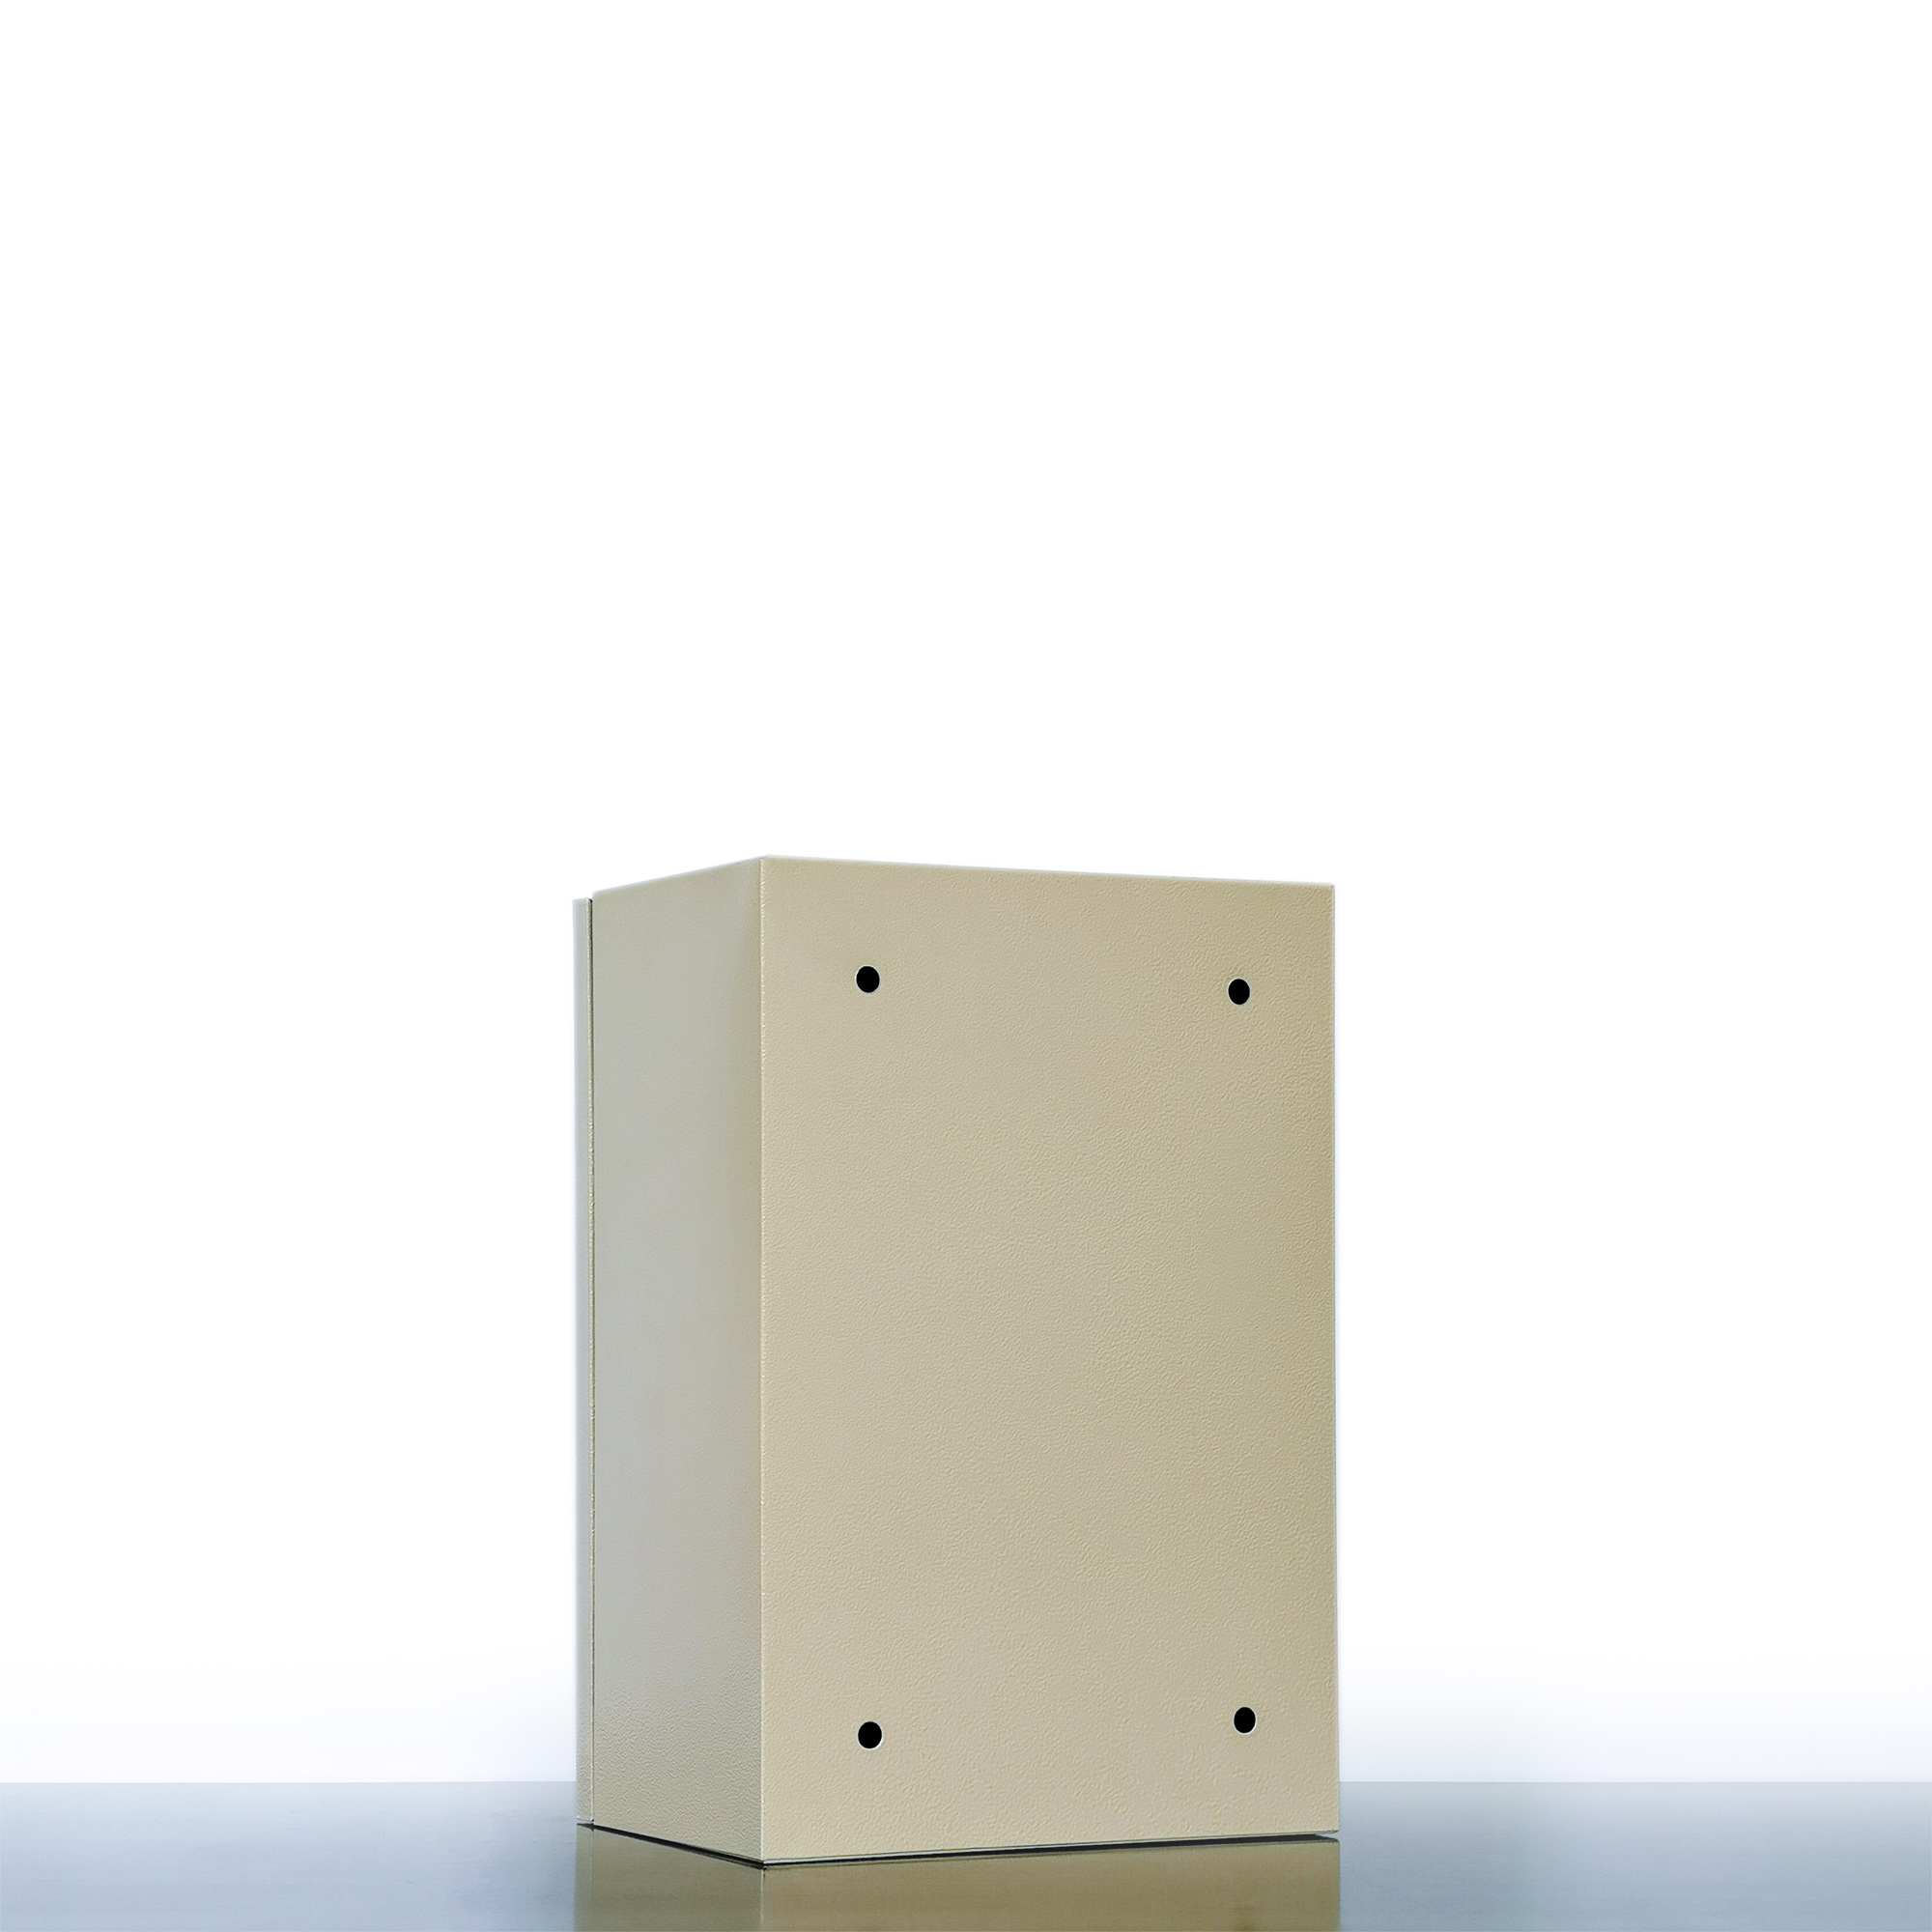 Vỏ Tủ Điện Sắt - Màu Kem (20x30x16 cm)